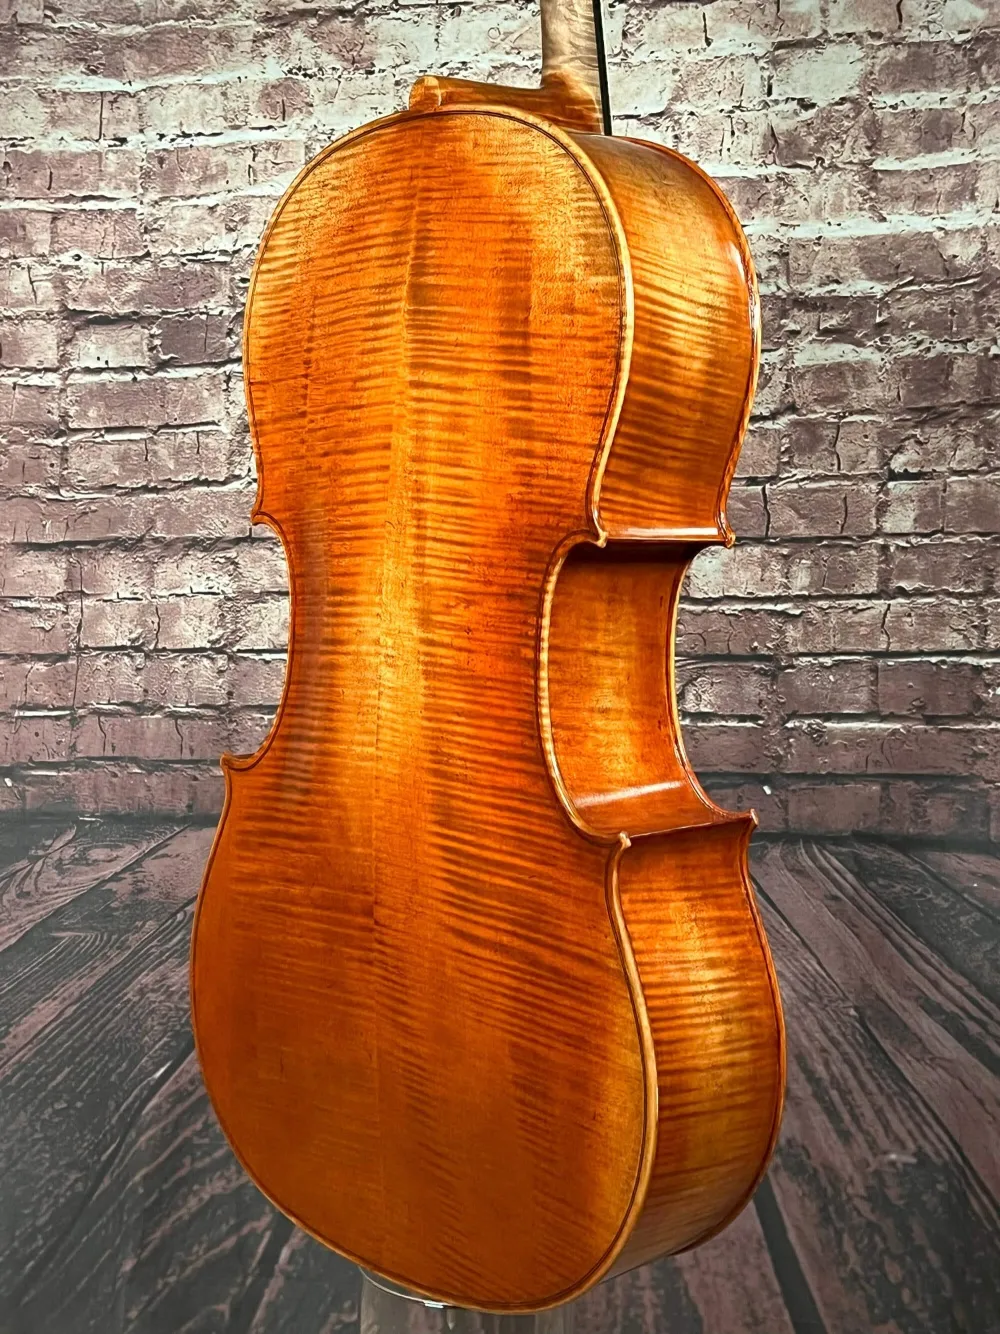 Boden-Zargen-Ansicht eines Stoica Alin Meister Cello Handarbeit aus Siebenbürgen 2021